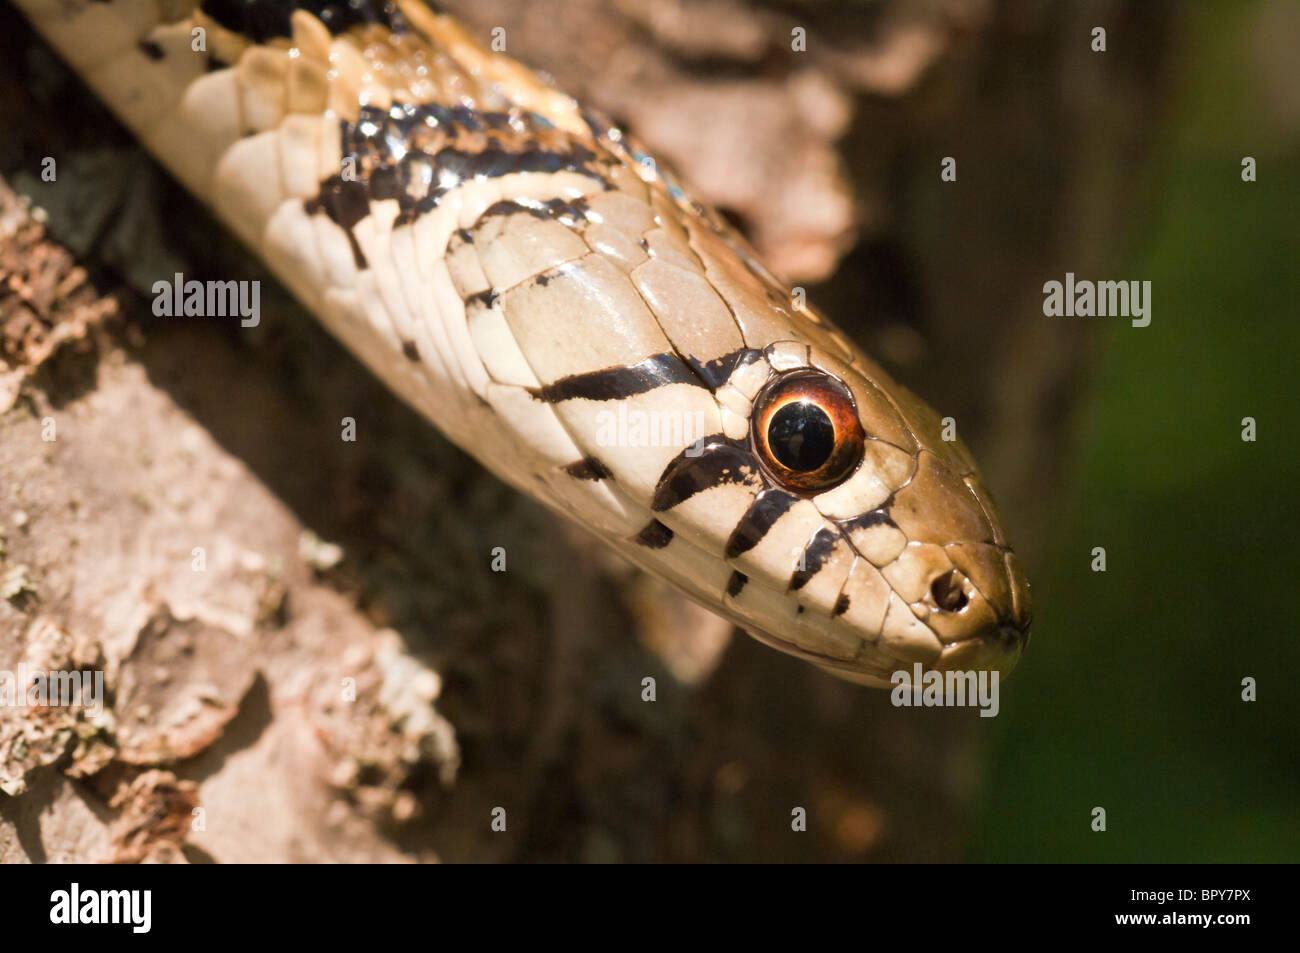 Giarrettiera a scacchi snake, Thamnophis marcianus, nativo di meridionale degli Stati Uniti Foto Stock